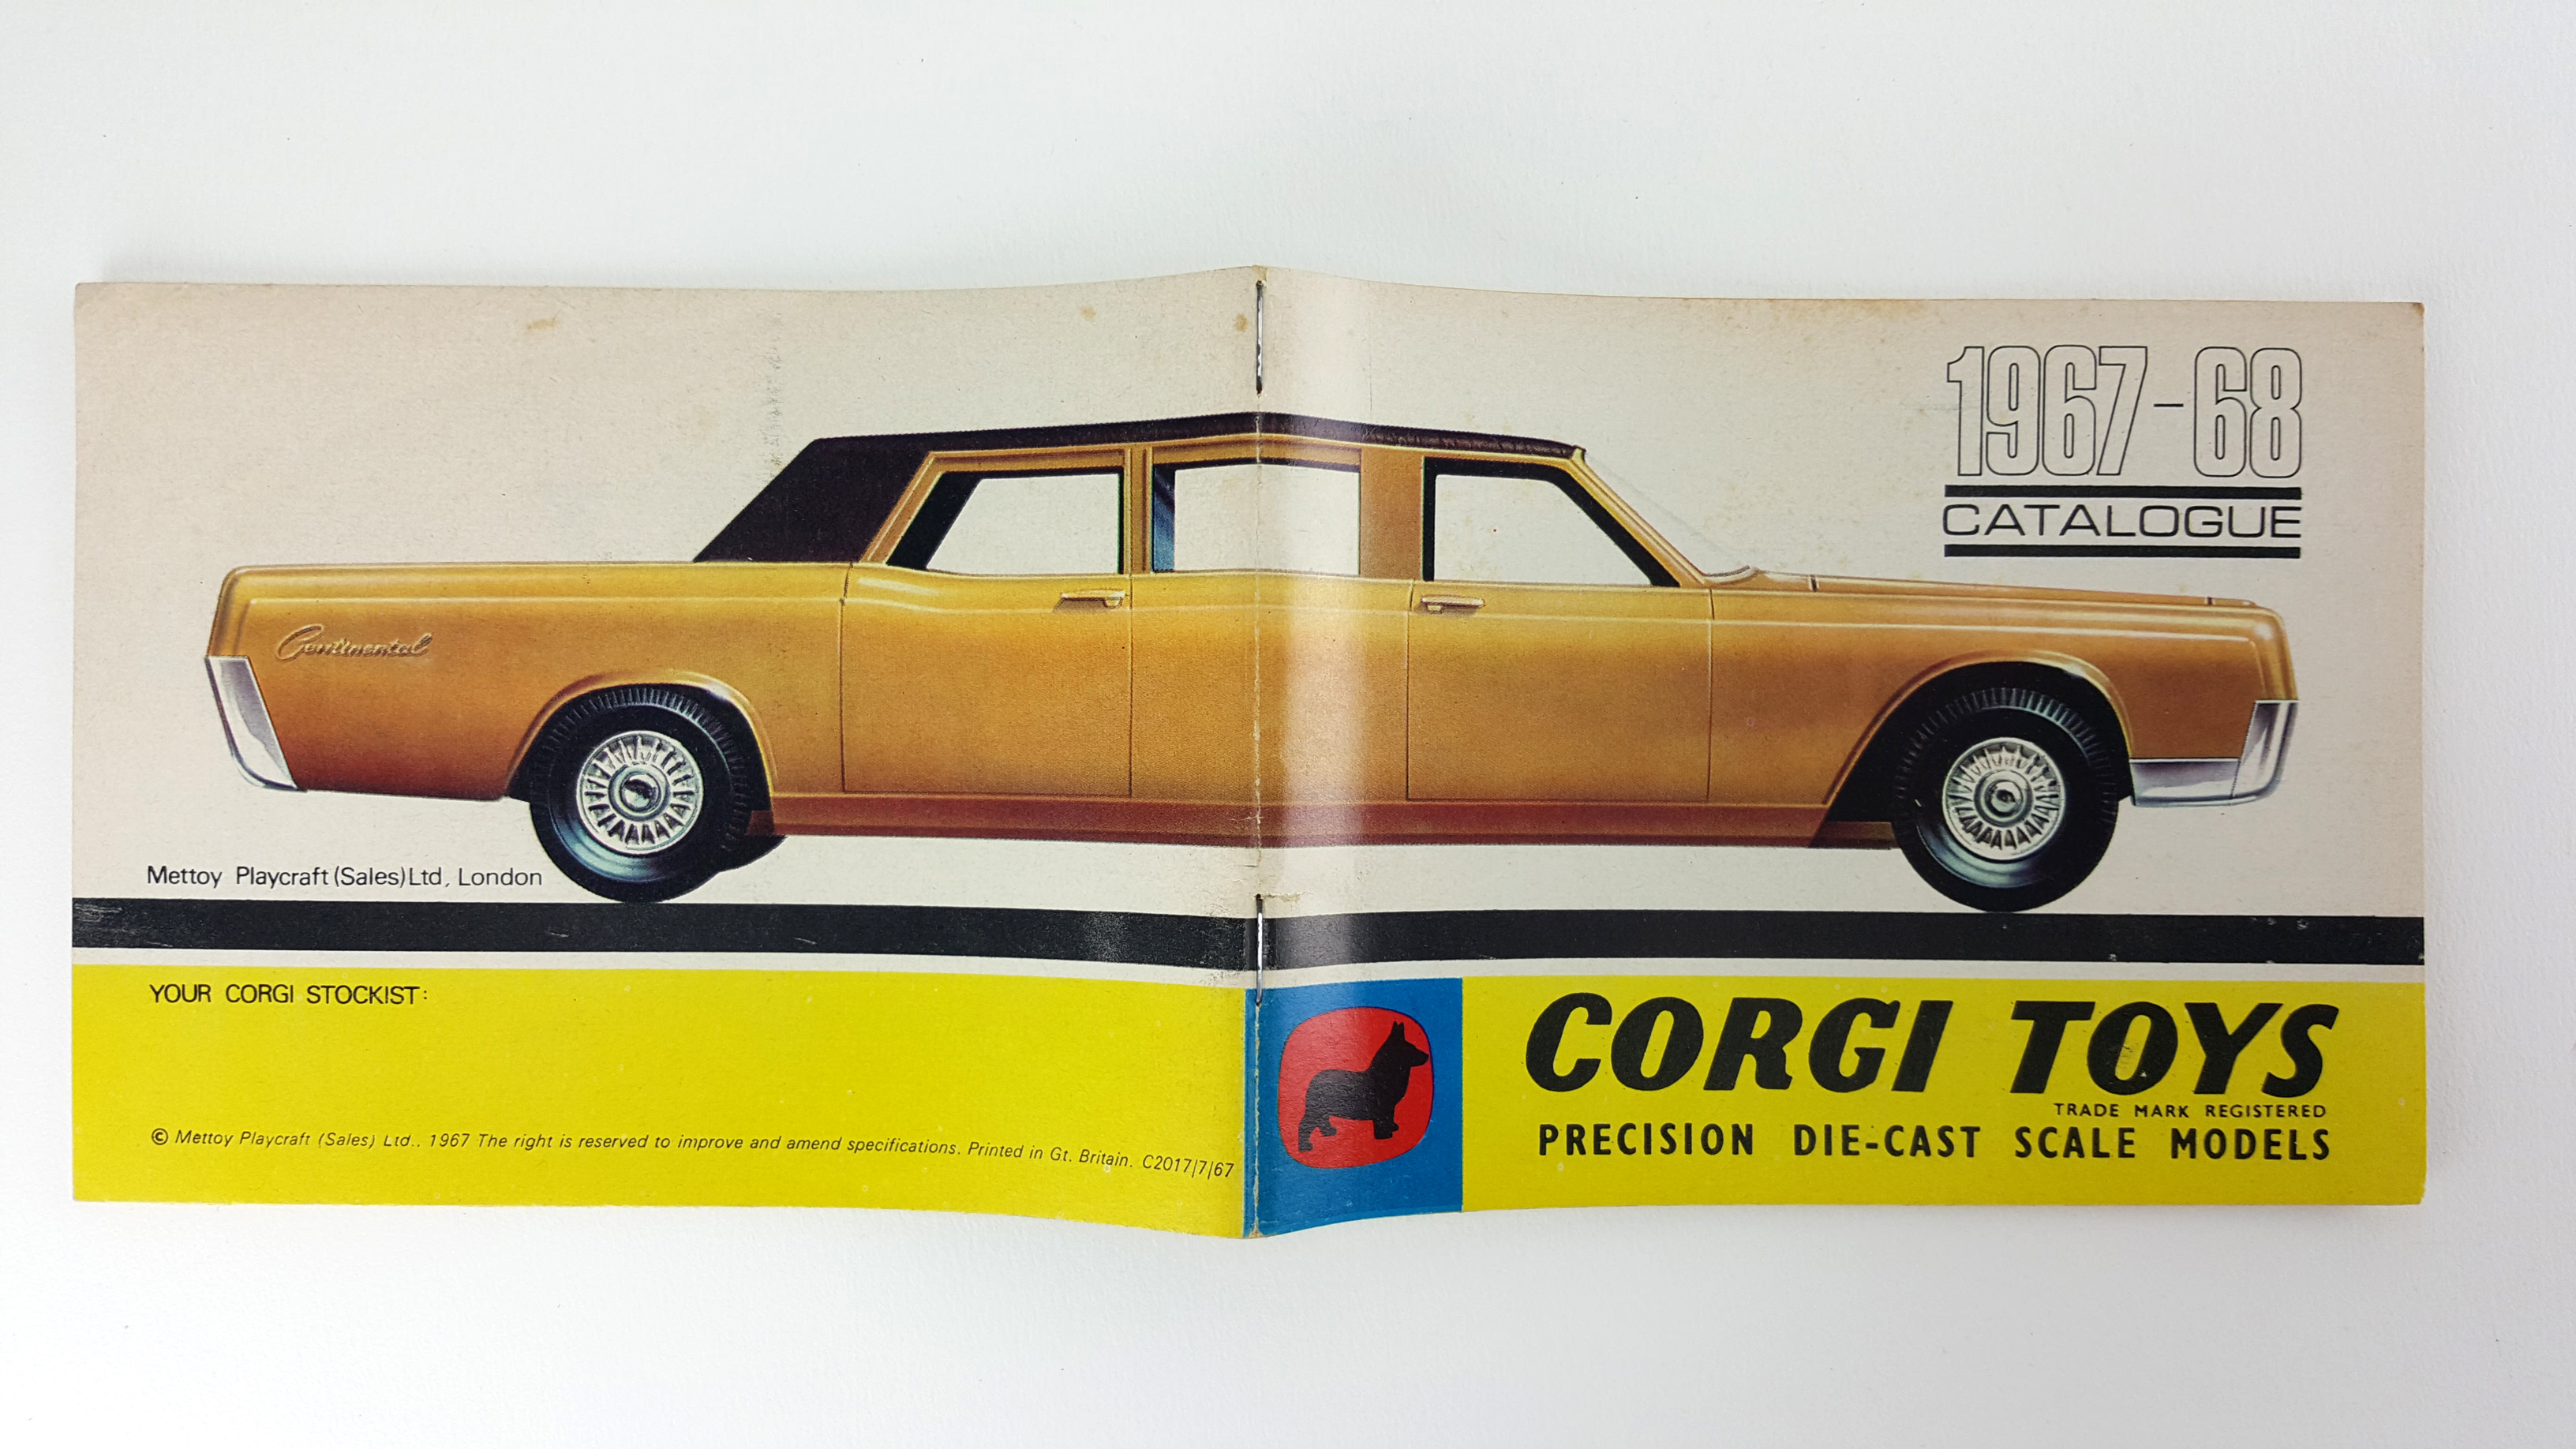 Corgi Toys: 1967-68 Catalogue by Corgi Toys: Near Soft cover